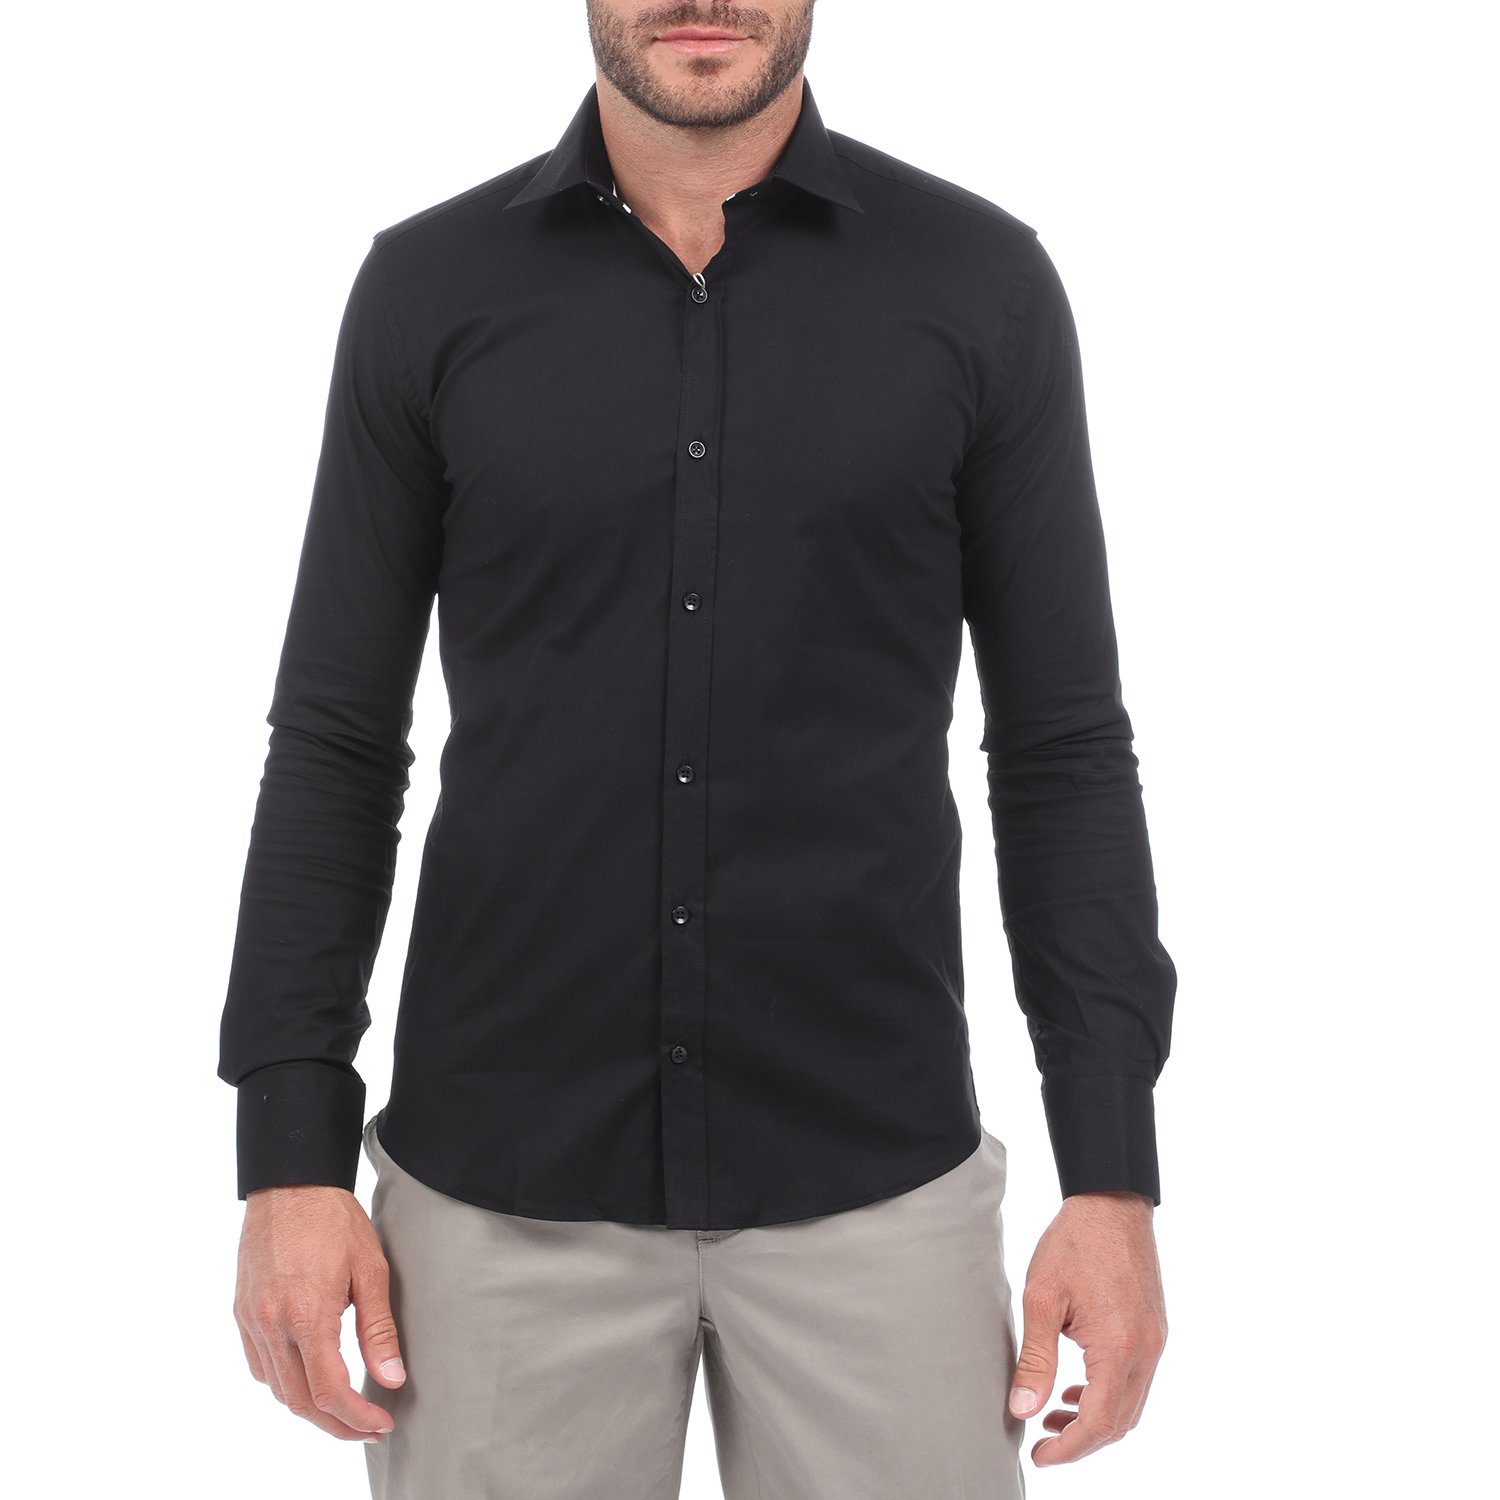 MARTIN & CO MARTIN & CO - Ανδρικό πουκάμισο MARTIN & CO SLIM FIT μαύρο